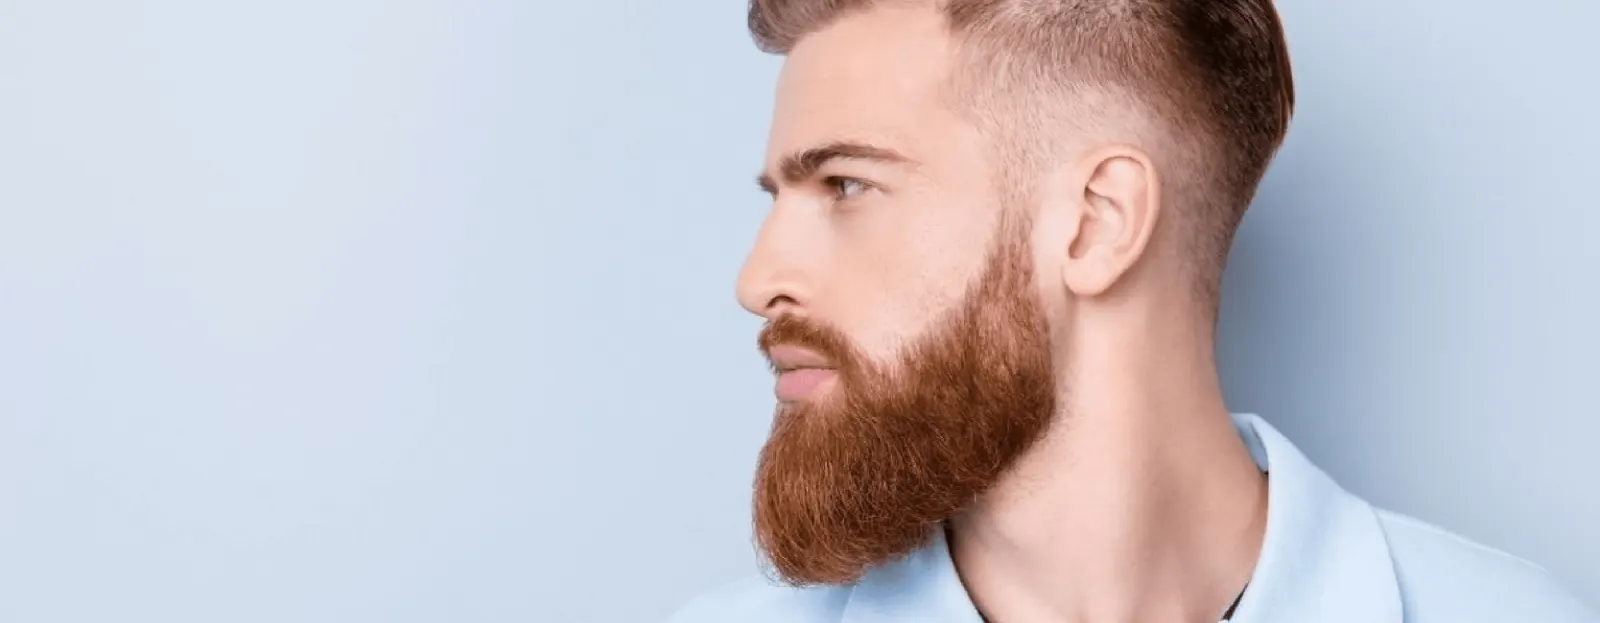 Hoe kun je jouw baard geleidelijk laten aflopen?